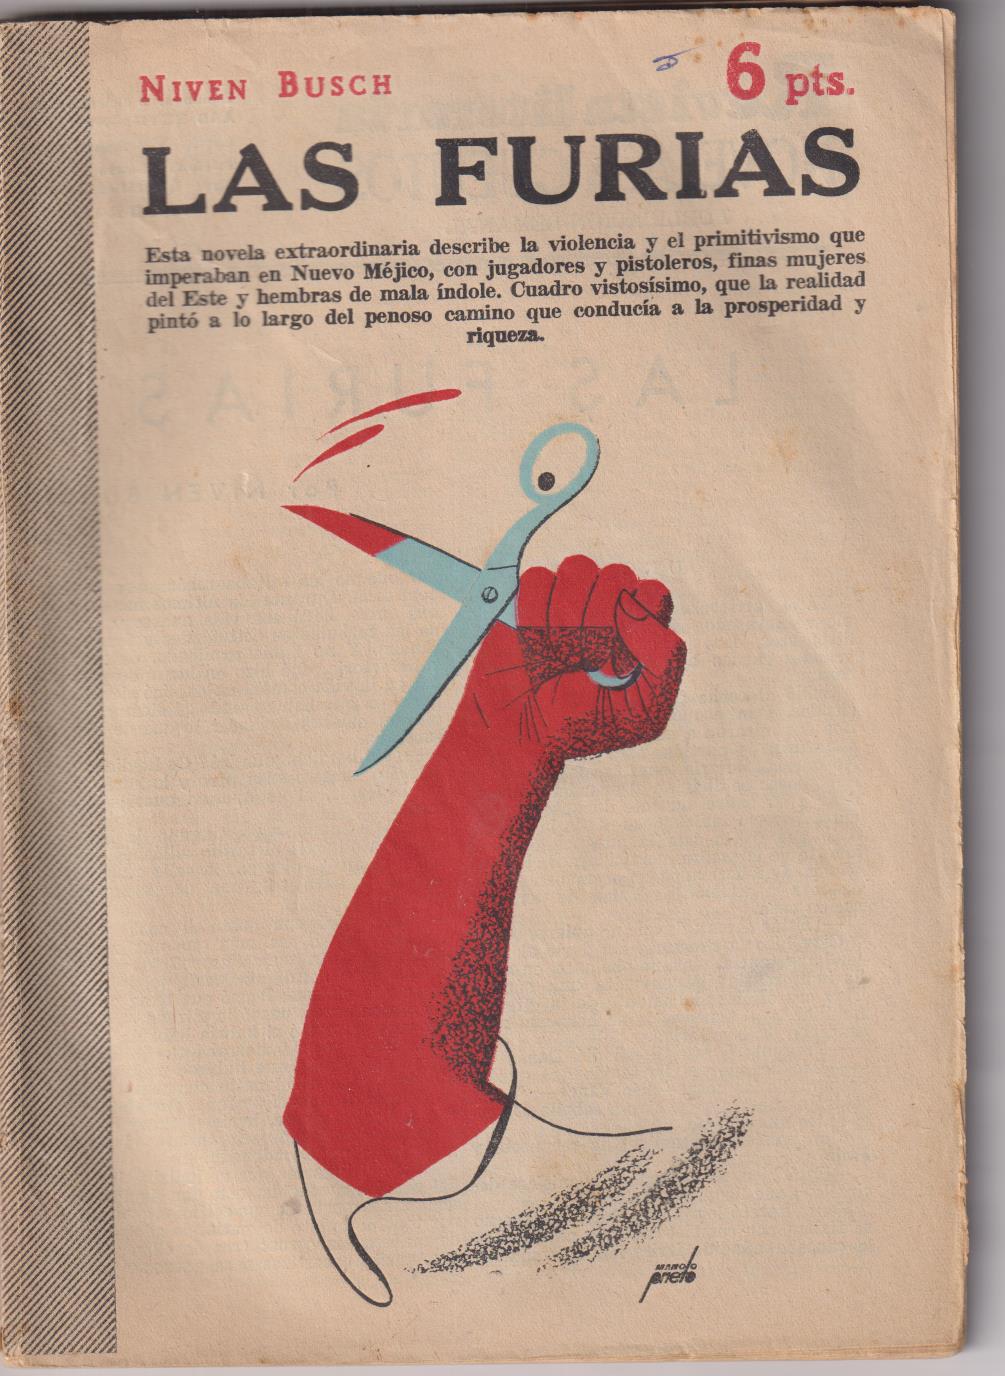 Revista Literaria Novelas y Cuentos nº 1285. Las Furias por Niven Busch. Año 1955